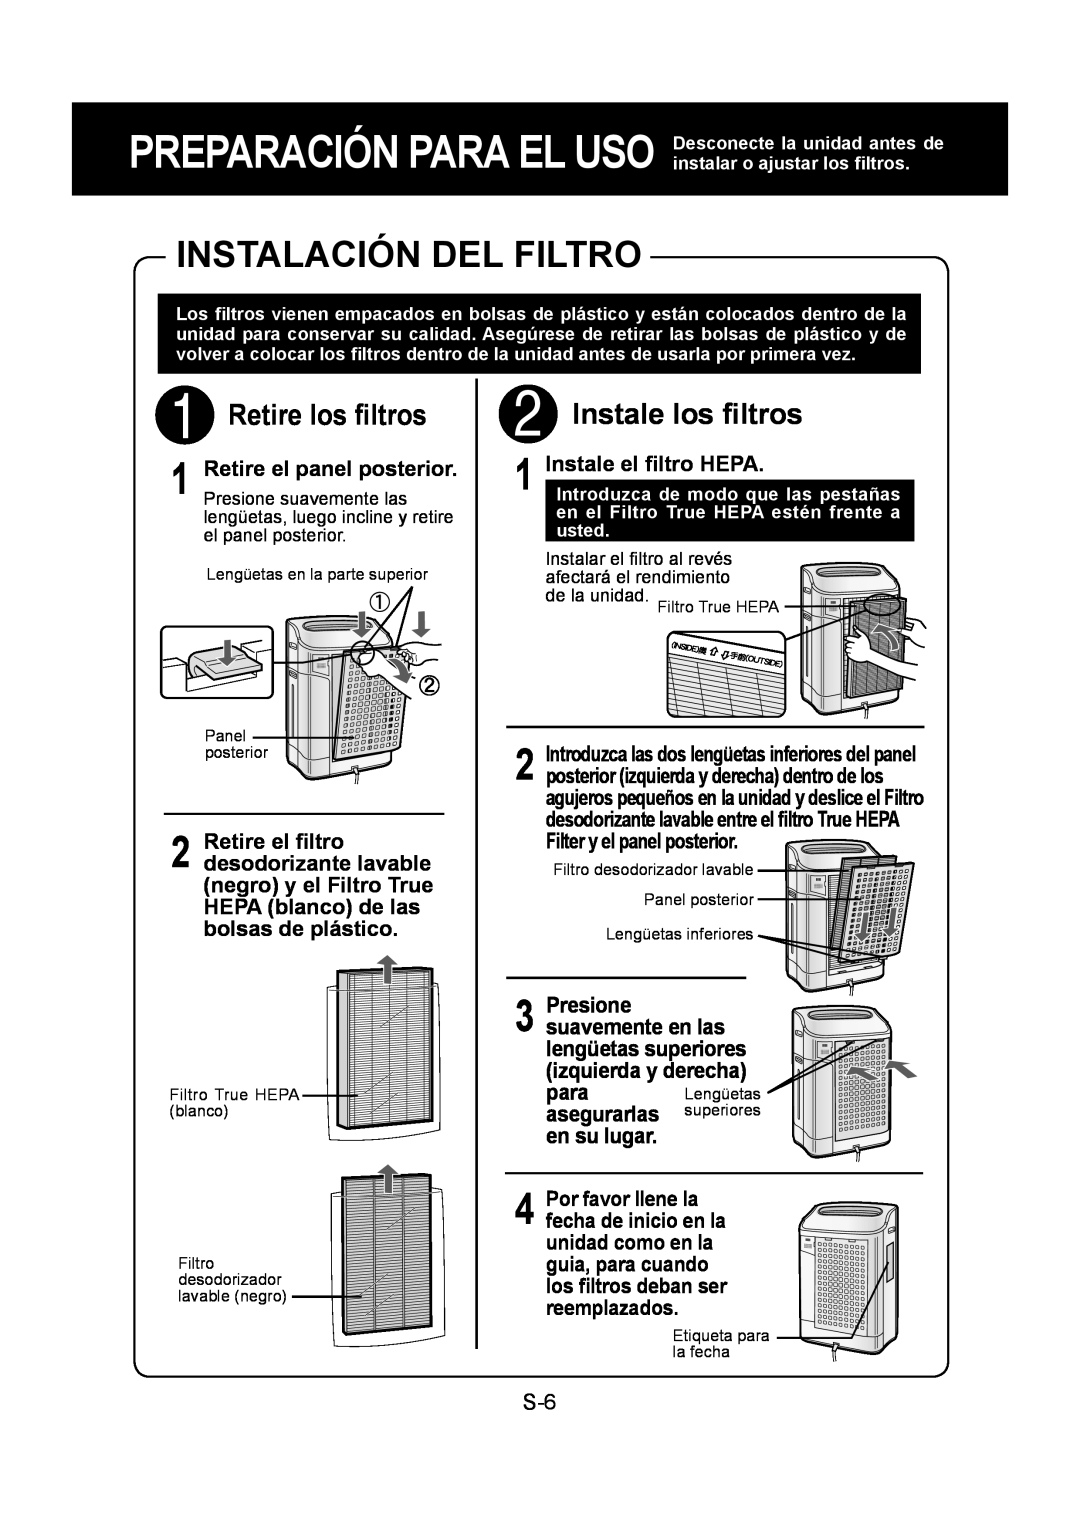 Sharp KC-860U operation manual Instalación Del Filtro, Retire los ﬁltros, Instale los ﬁltros, Instale el ﬁltro HEPA 